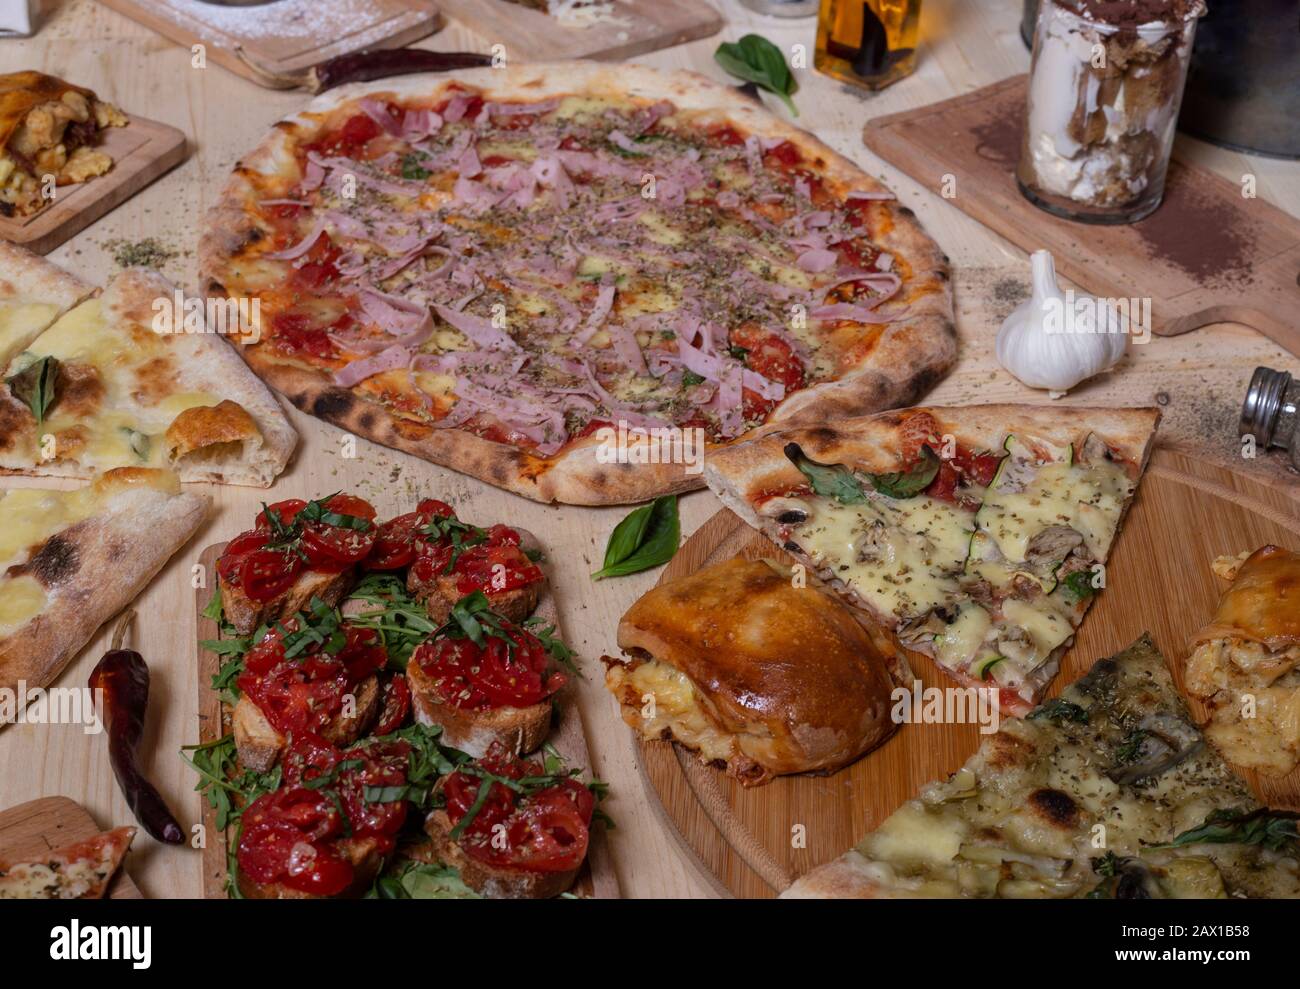 Varietà di pizza e tapas italiane su sfondo di legno. Immagine isolata. Cucina mediterranea Foto Stock